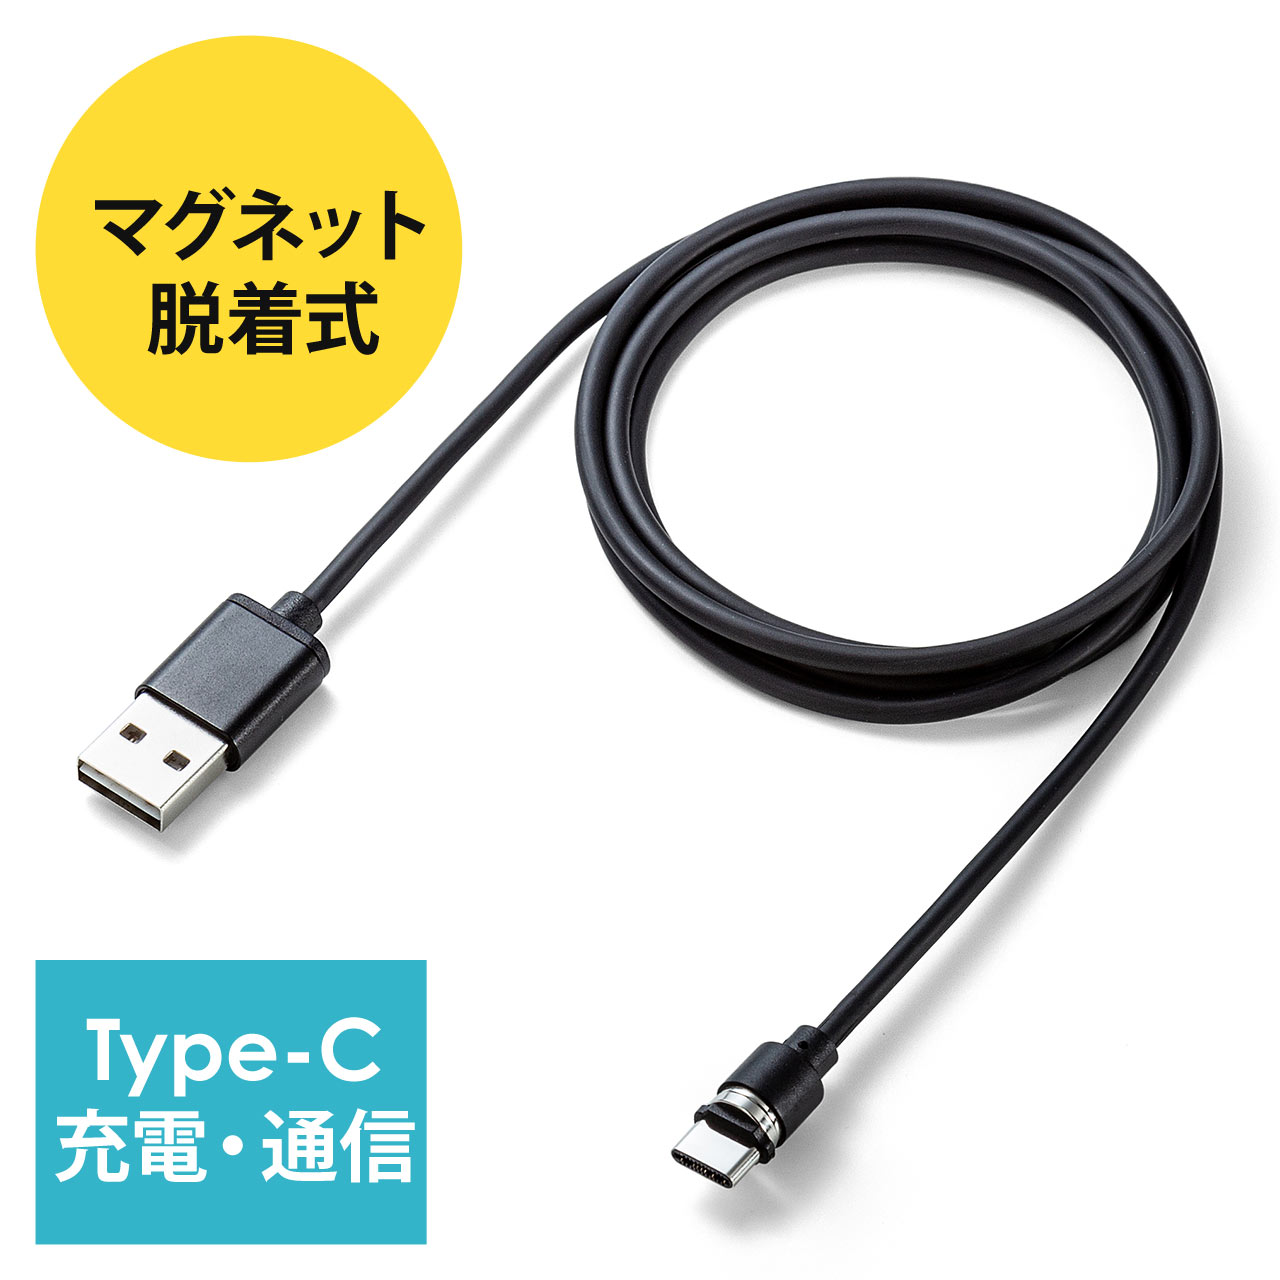 コネクタ両面対応マグネット着脱式USB Type-C充電ケーブル（QuickCharge・スマートフォン・充電・通信・2A対応・ケーブル長1m・ブラック）  500-USB061の販売商品 通販ならサンワダイレクト